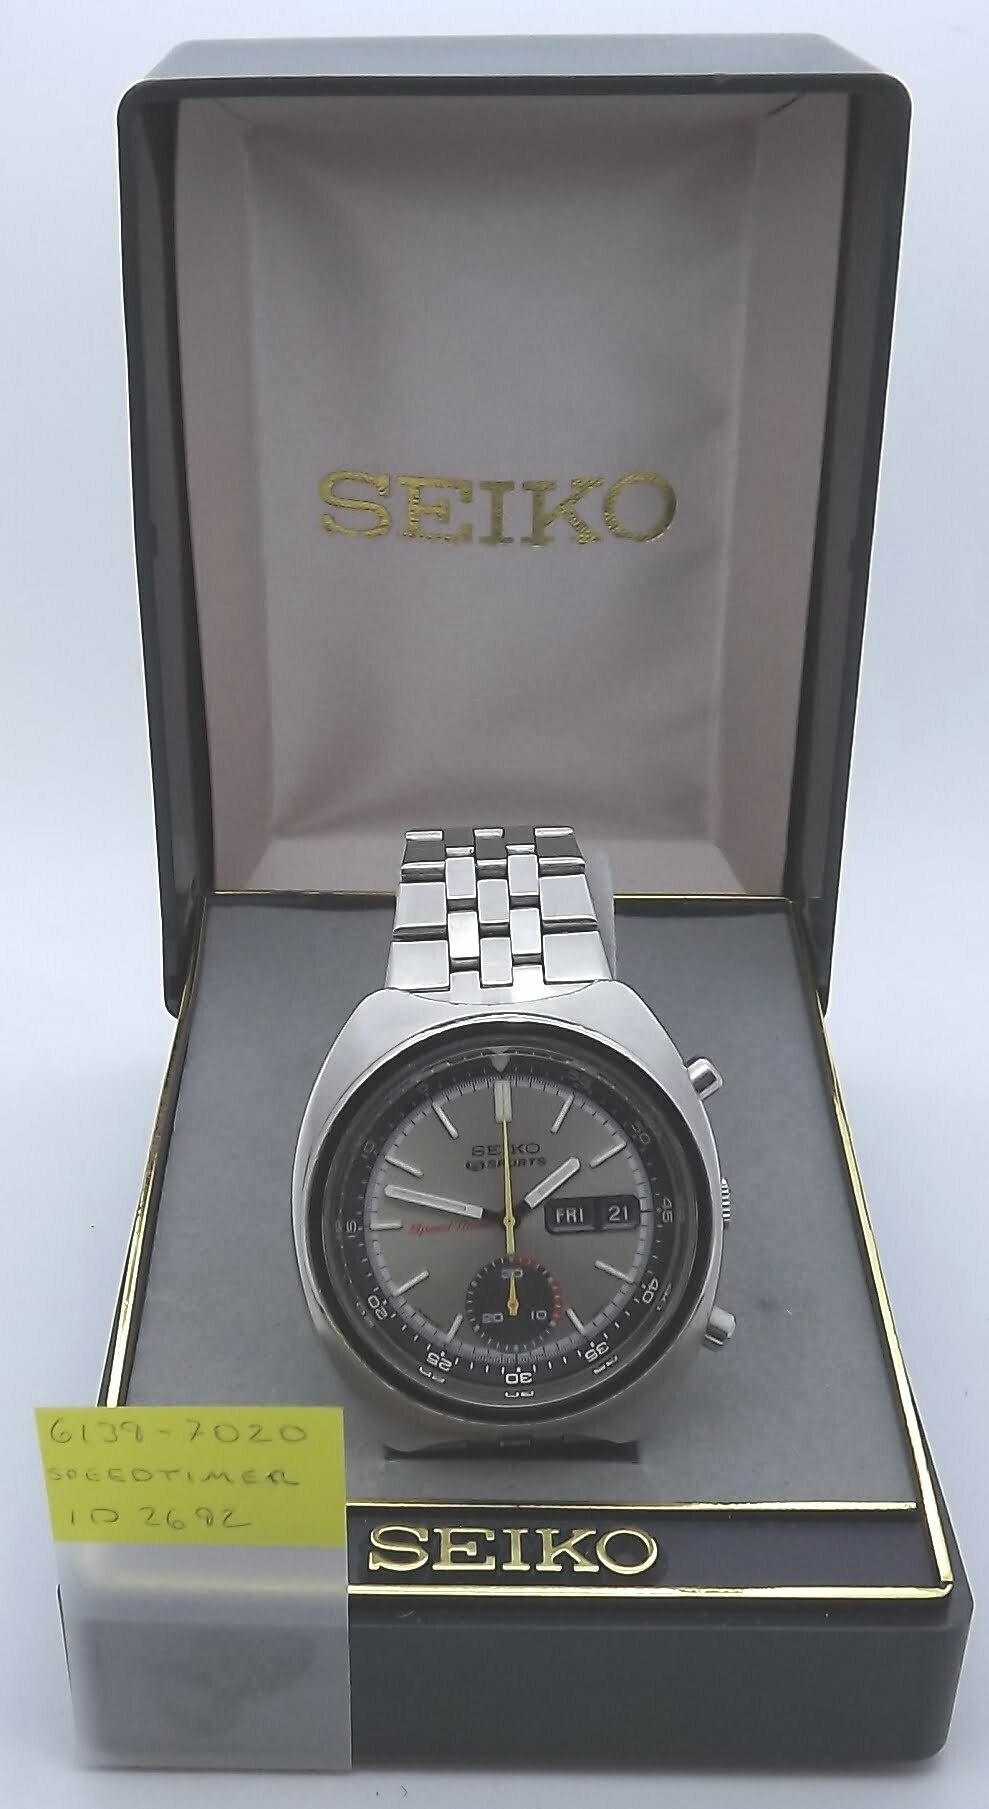 6139-7020 – Seiko Works